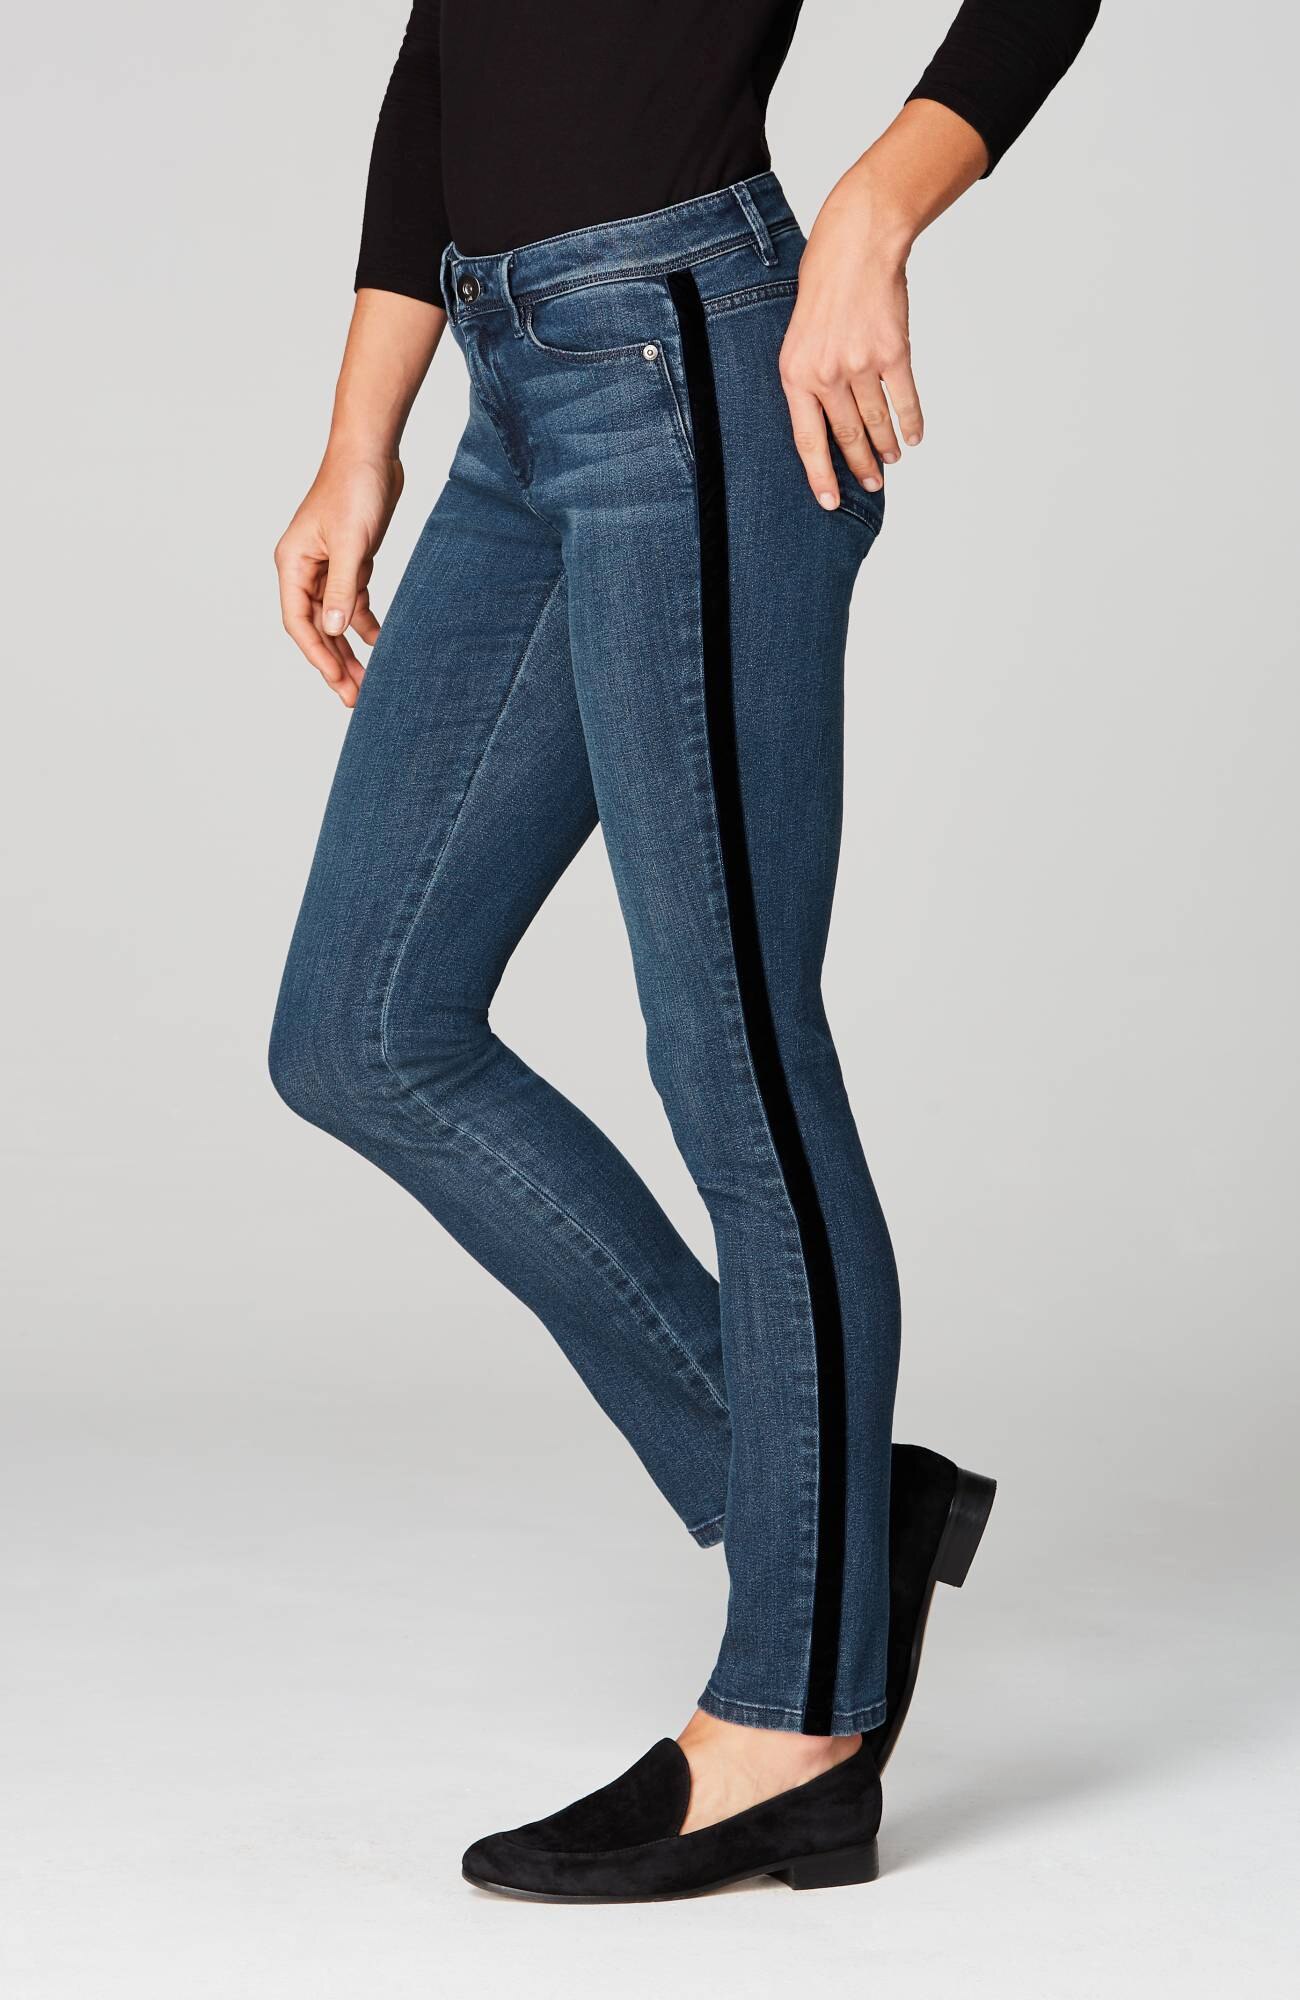 j jill authentic fit jeans